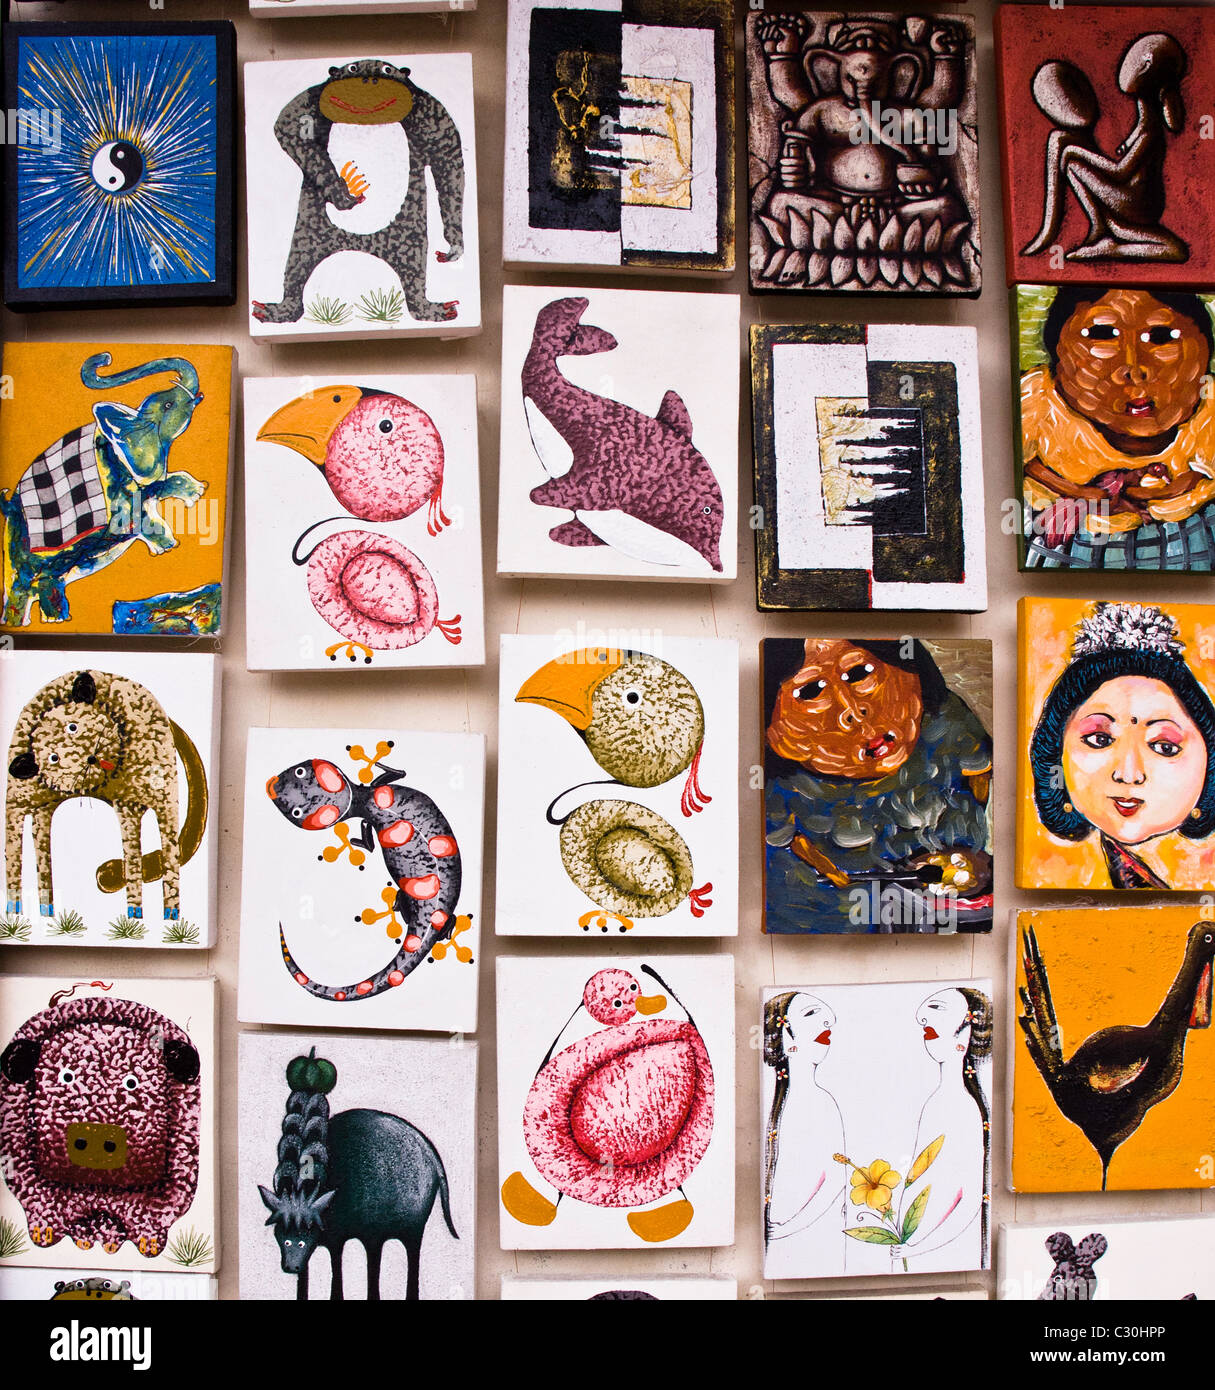 Bild von kleinen Gemälden von balinesischen Künstlern, in Kunst Geschäfte entlang der Straßen angezeigt Stockfoto